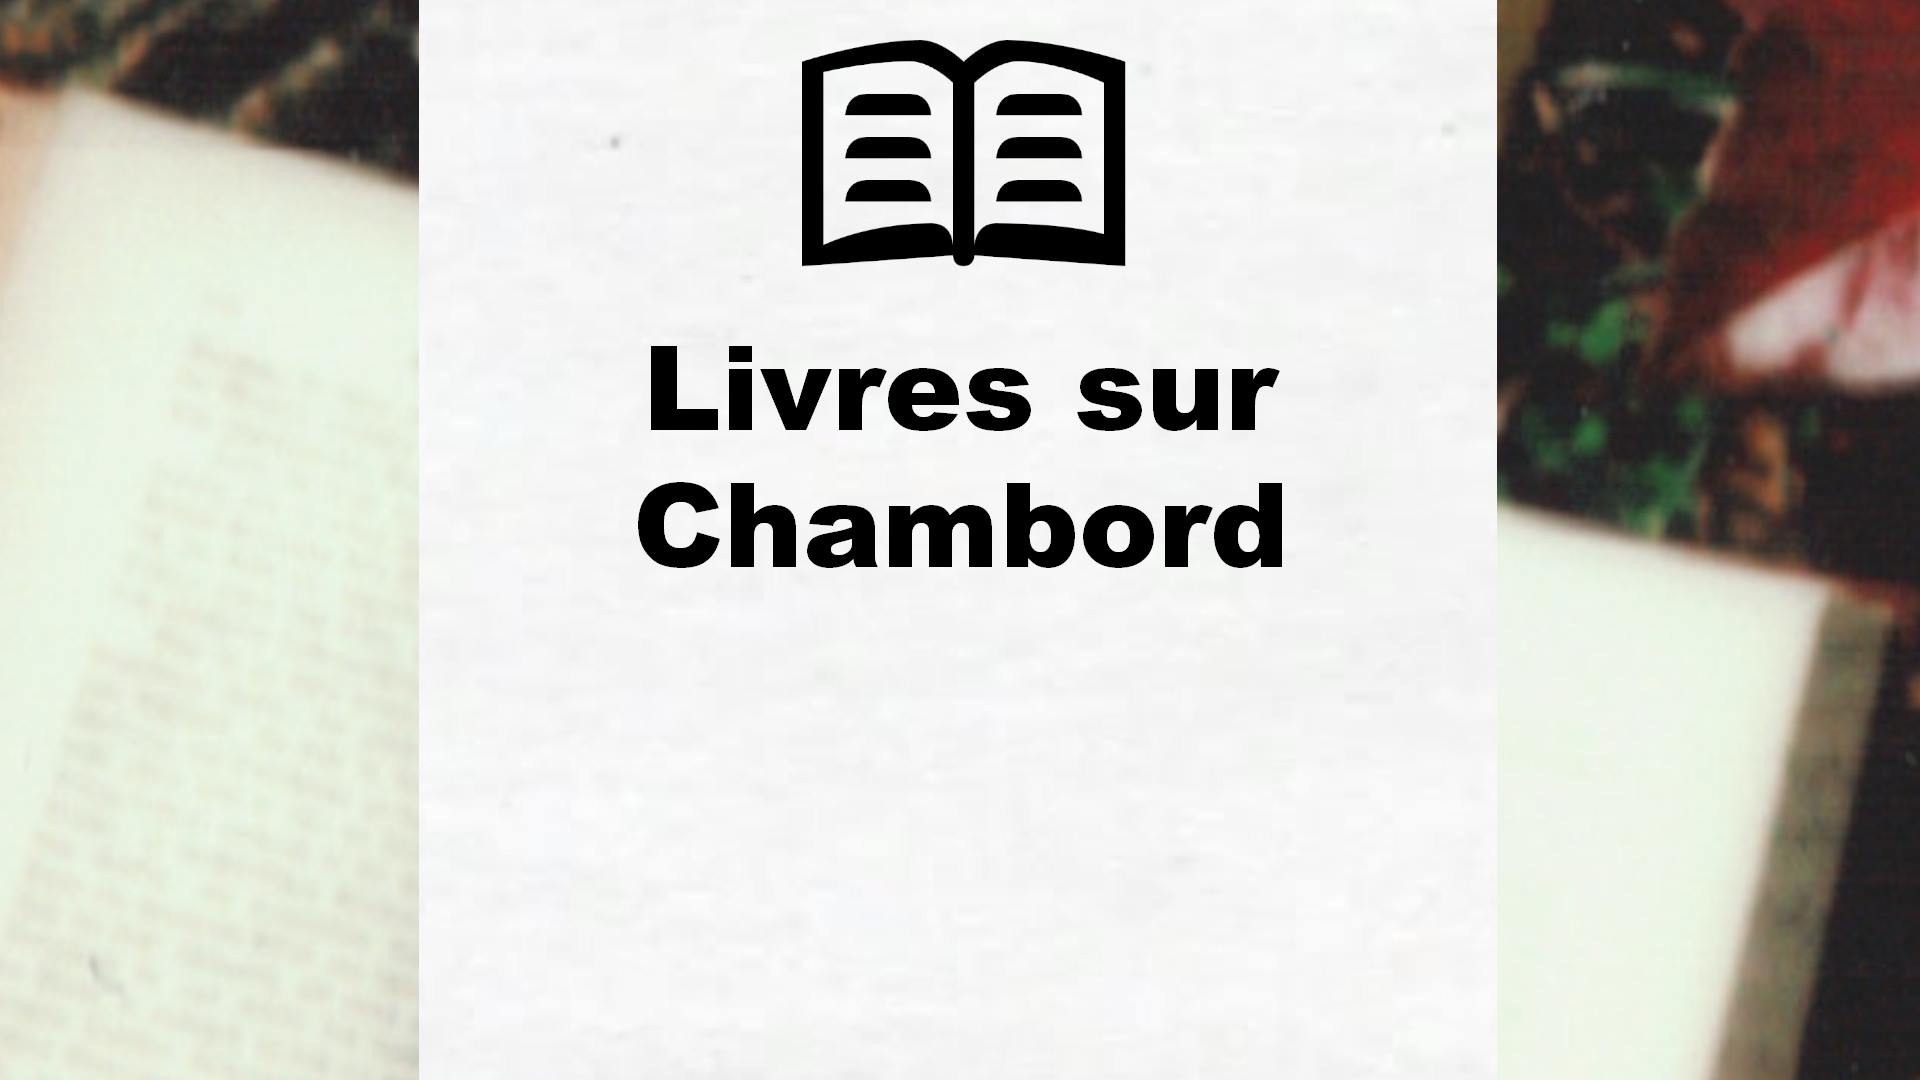 Livres sur Chambord